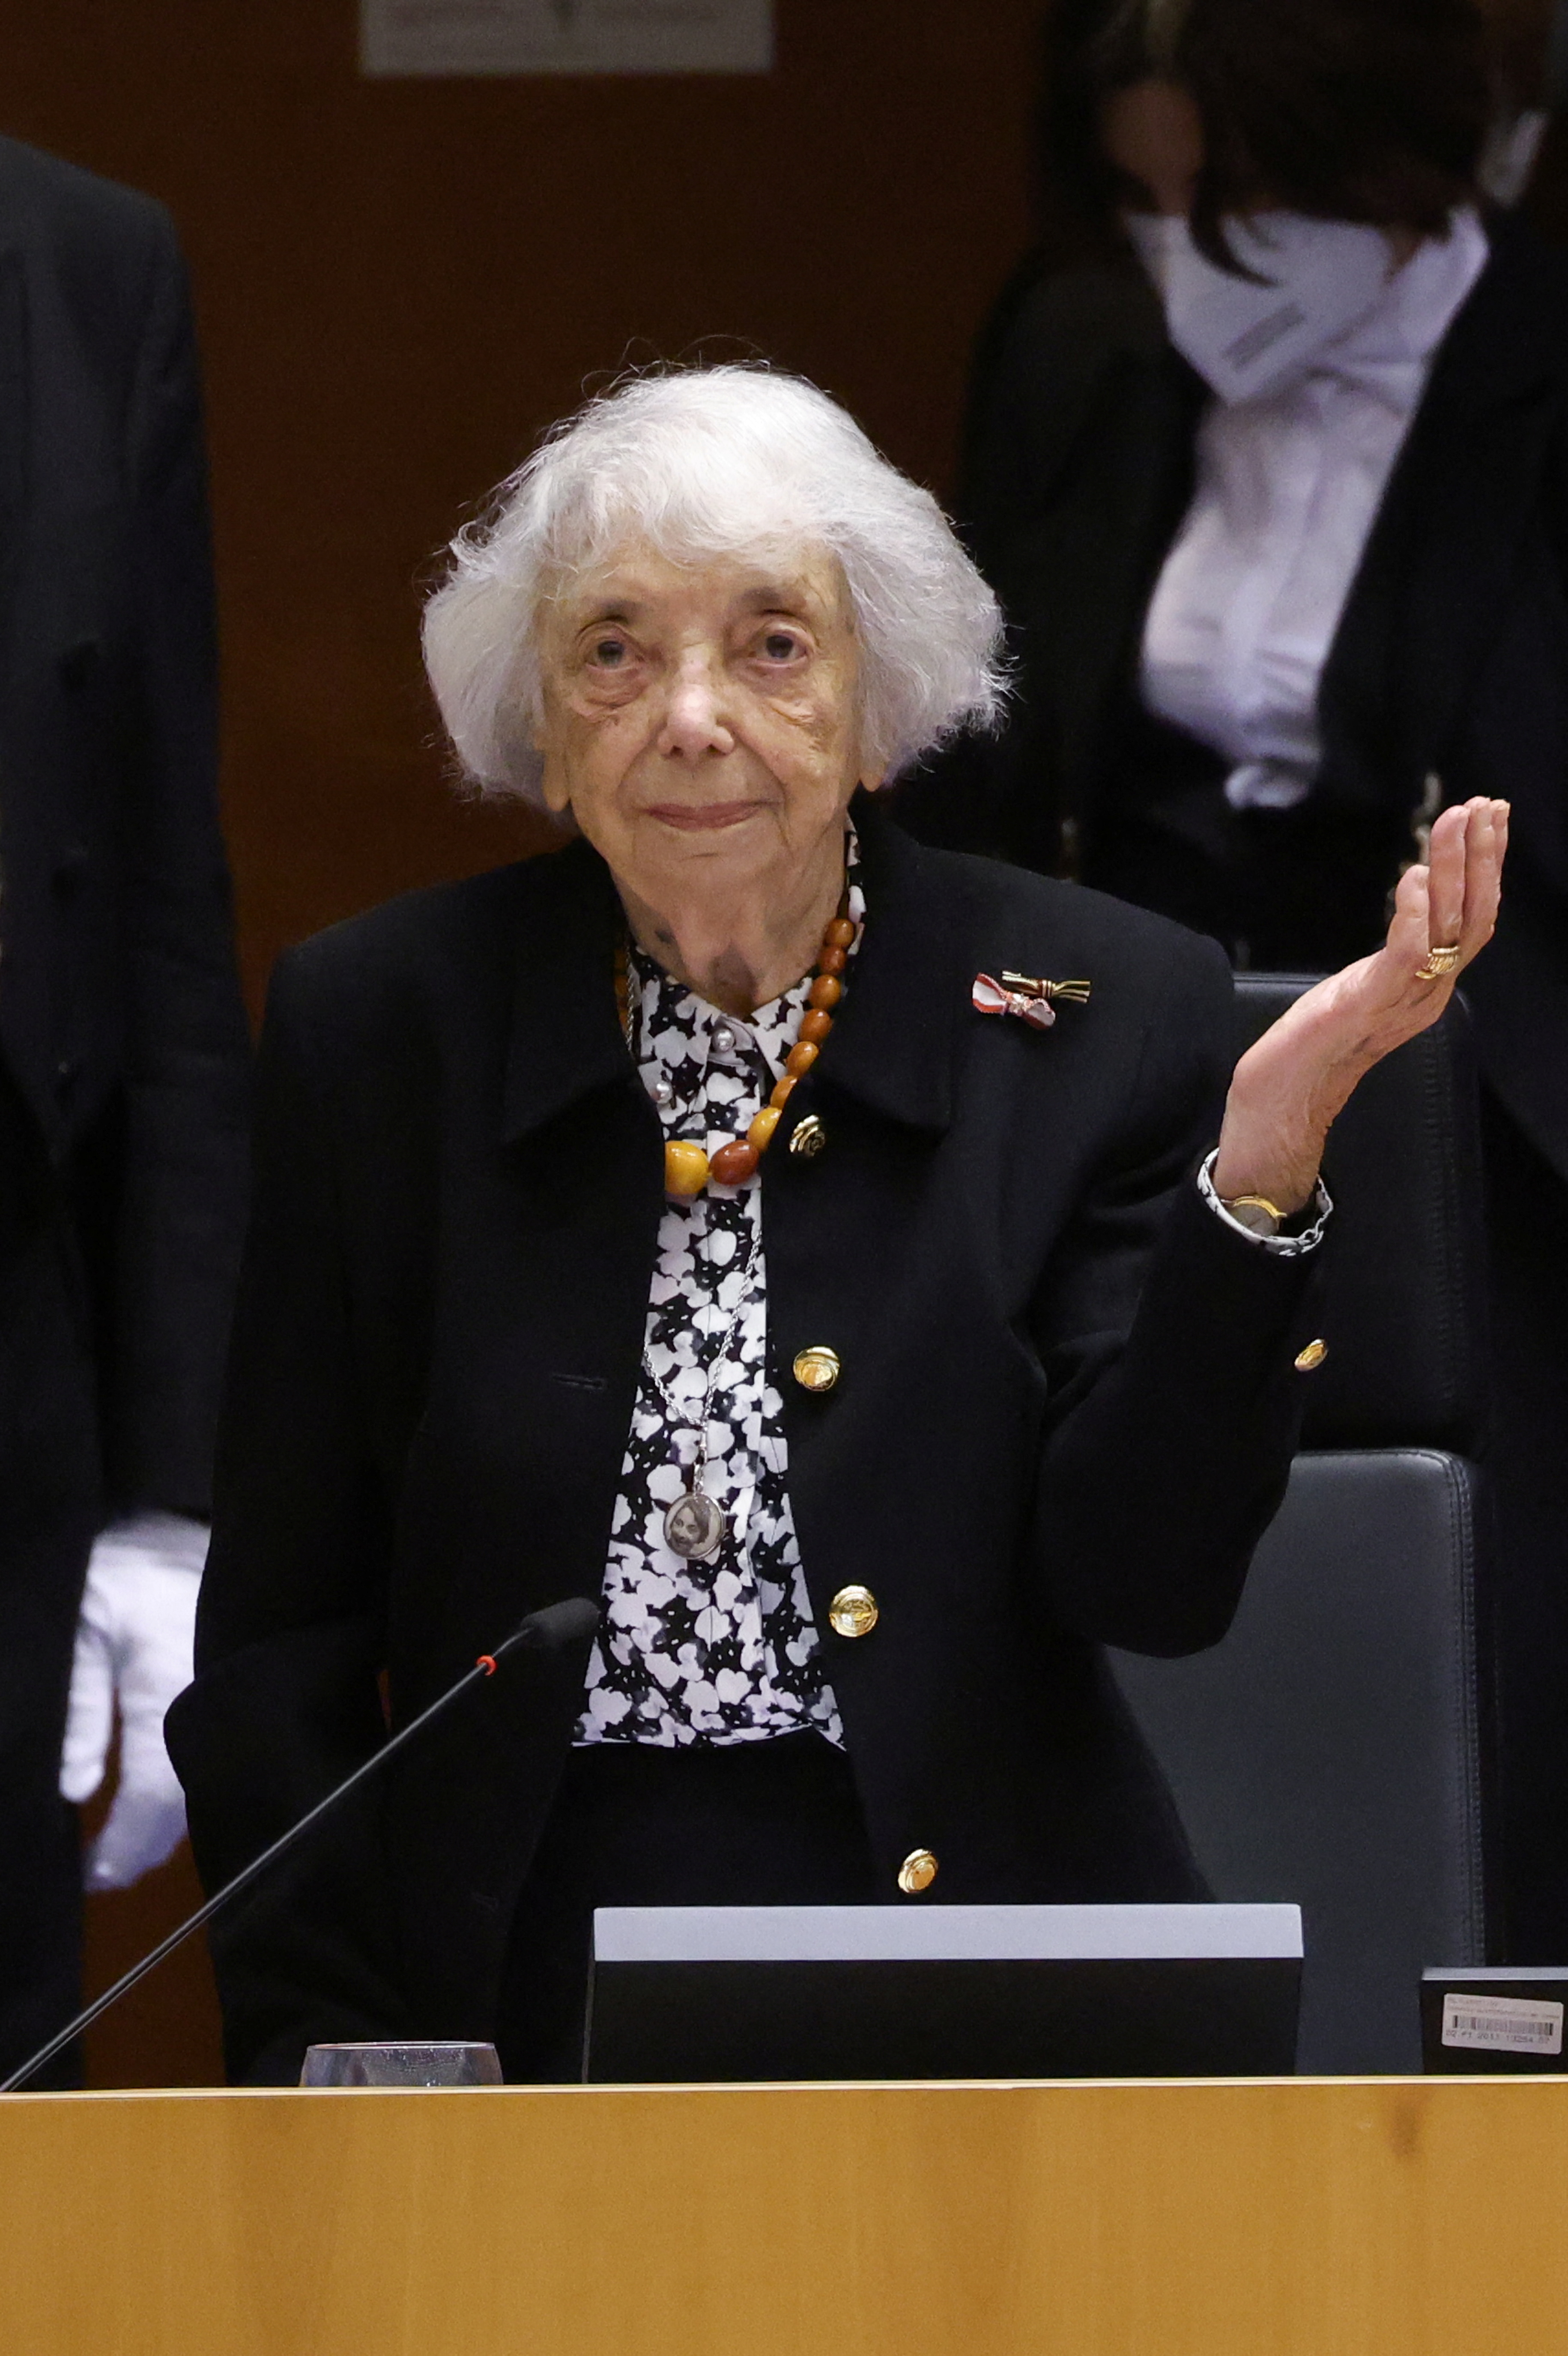 La sobreviviente del Holocausto Margot Friedlander reacciona después de ser aplaudida por miembros del parlamento durante una sesión plenaria especial para conmemorar el Día de la Memoria del Holocausto, en el Parlamento Europeo en Bruselas, Bélgica, el 27 de enero de 2022. REUTERS/Yves Herman